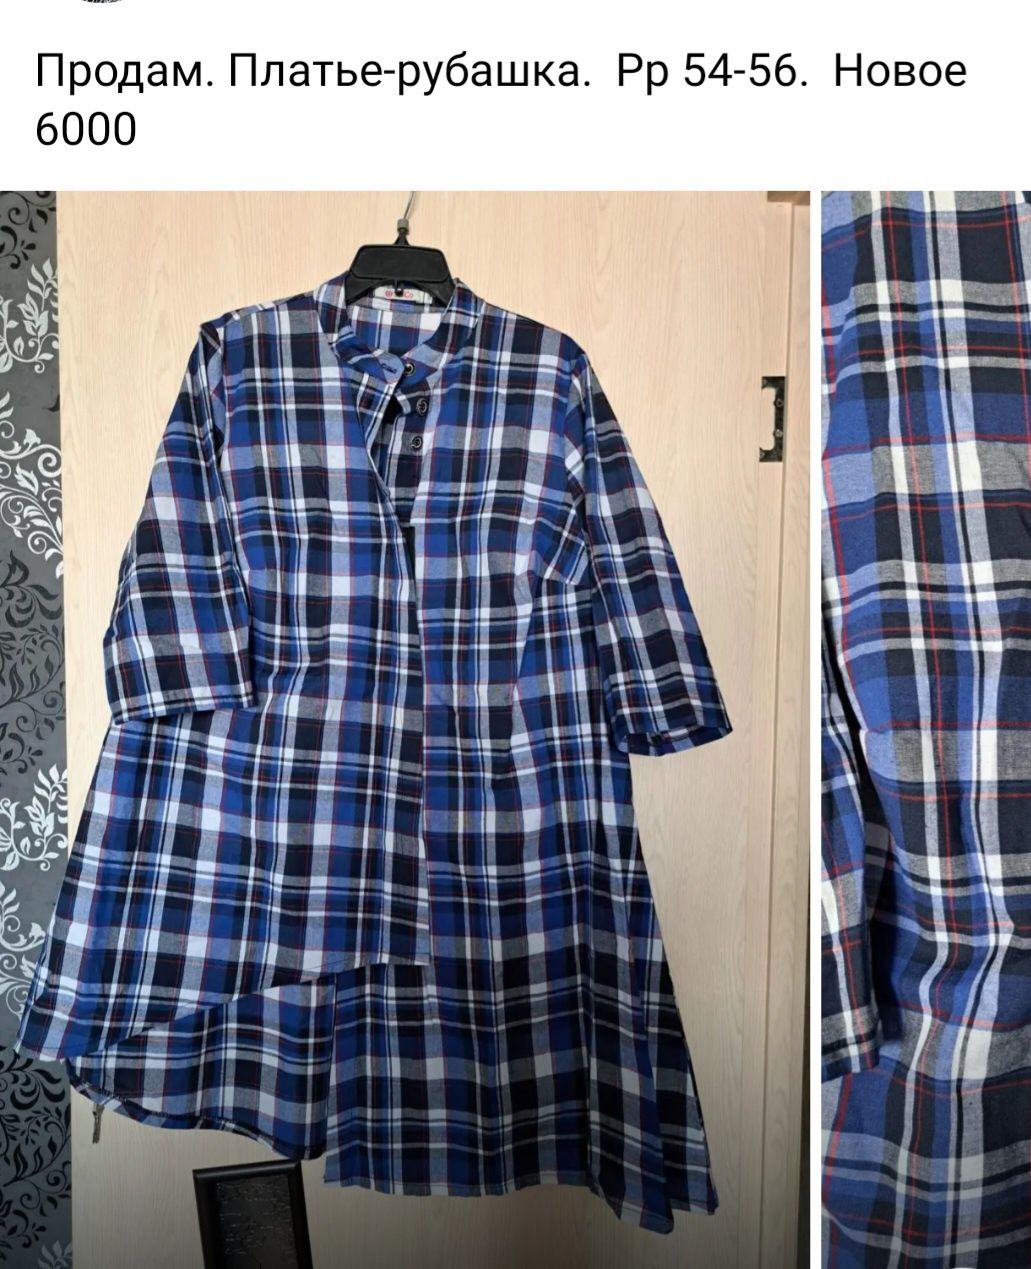 Продам платья рубашки